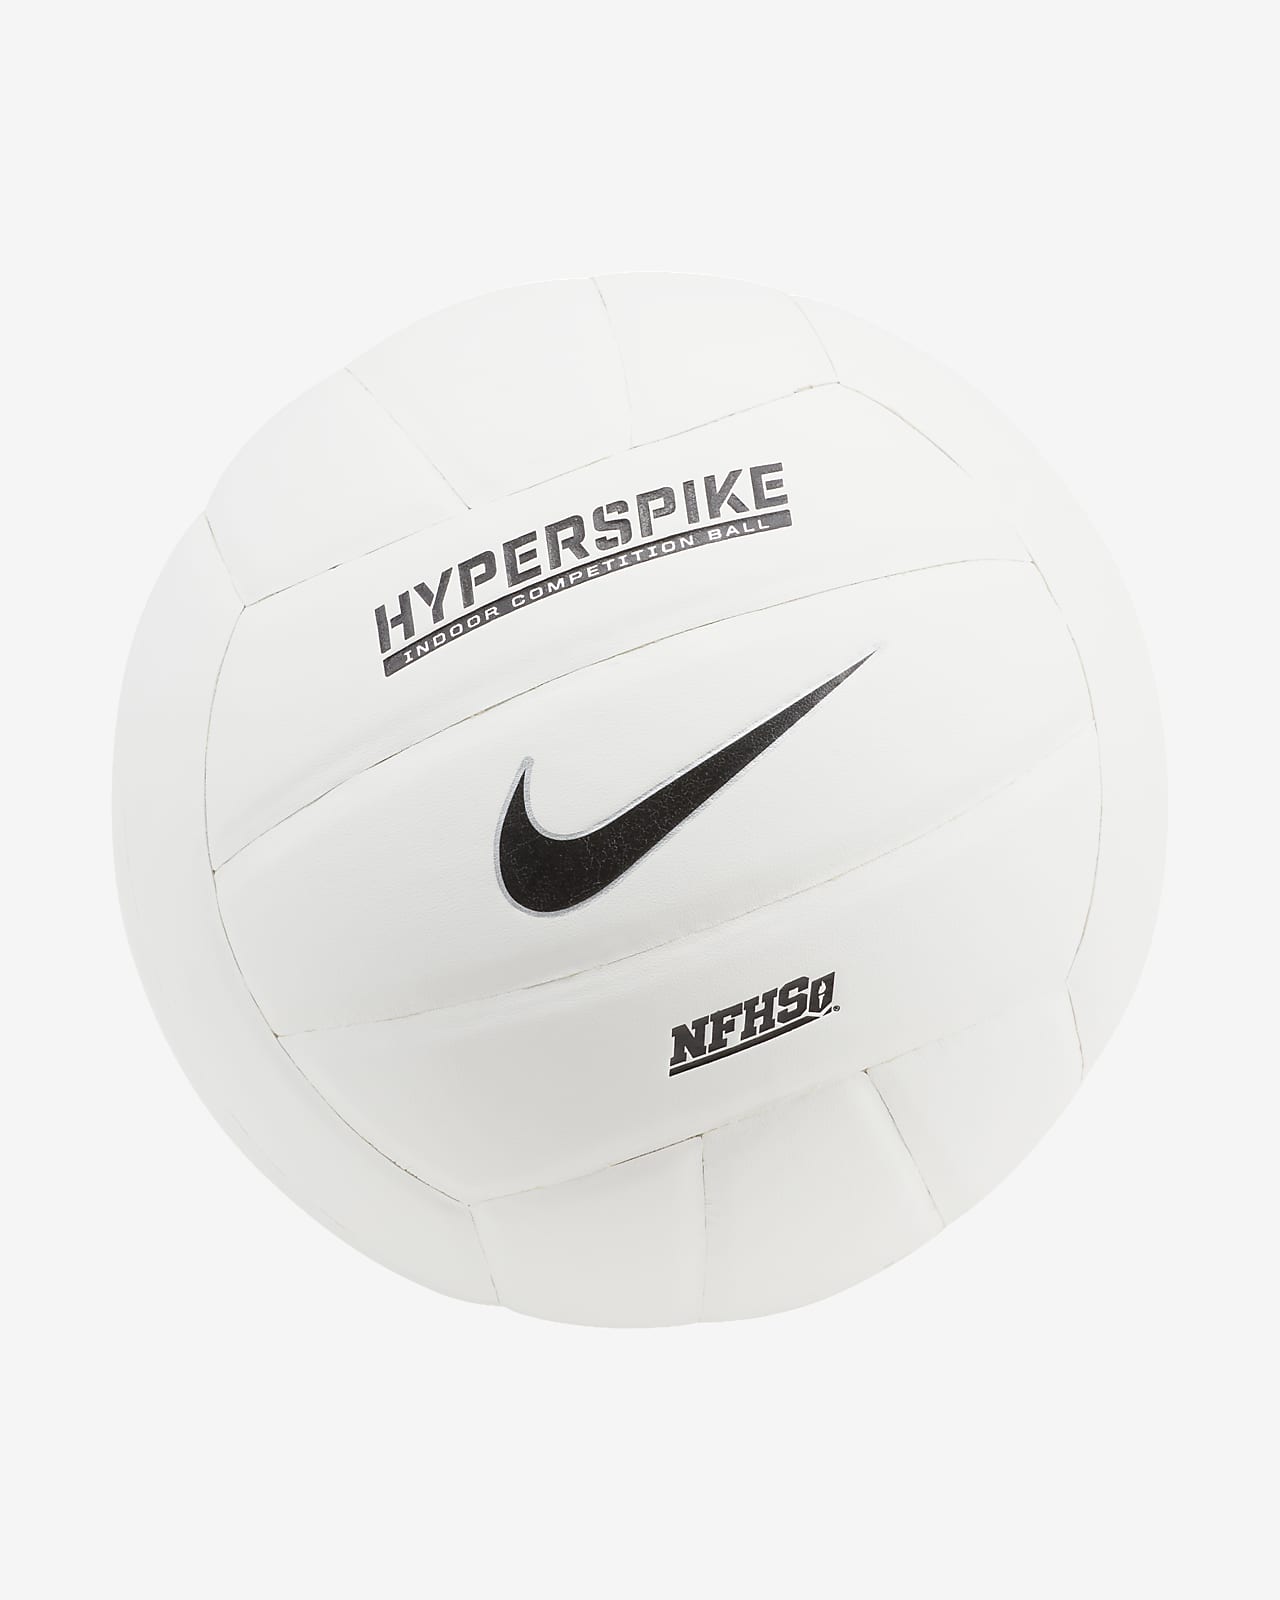 Balón de vóleibol Nike hyperspike 18P. Nike.com